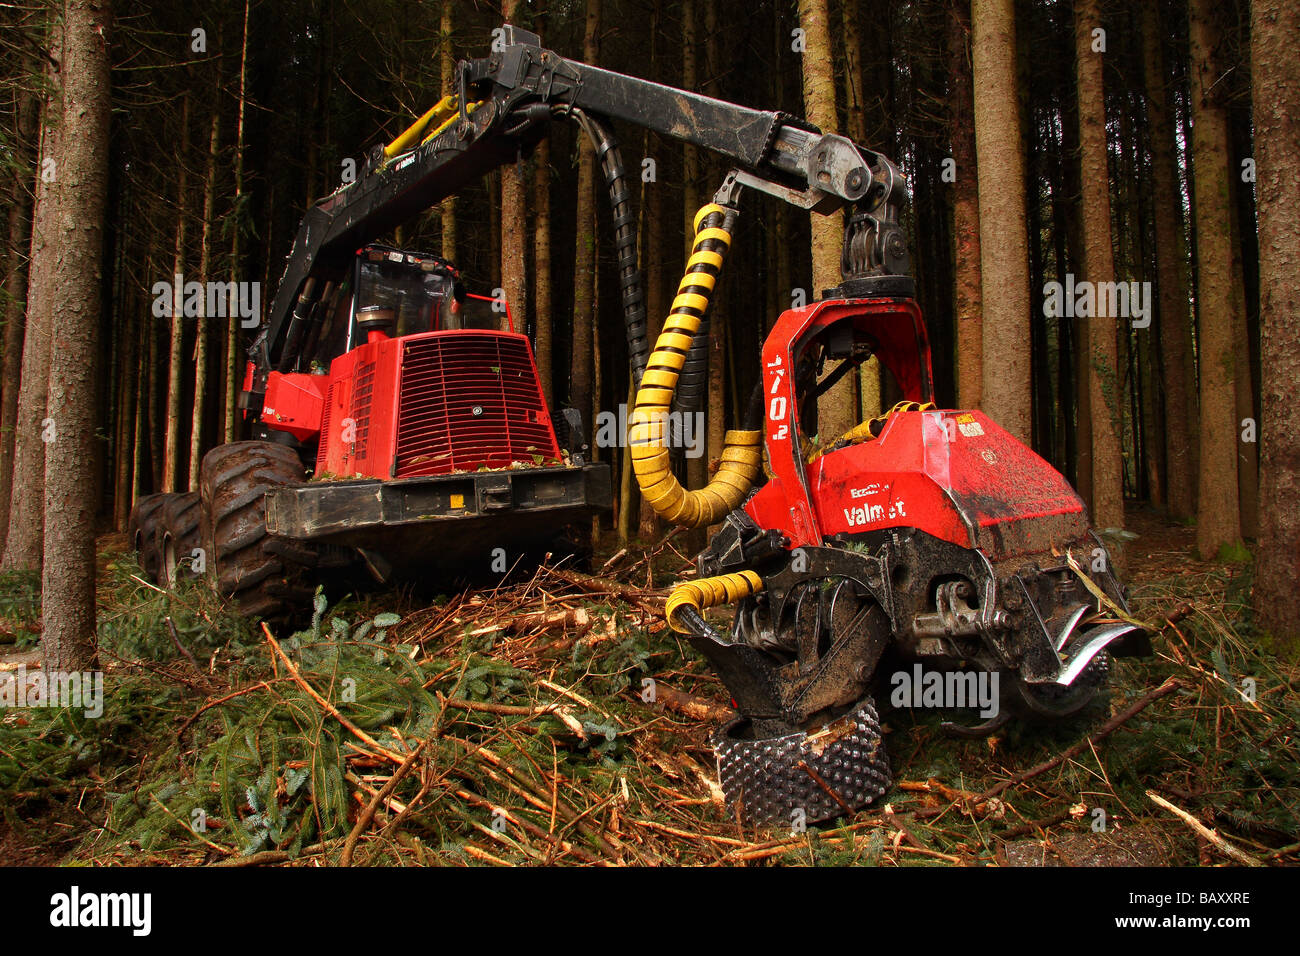 Une machine forestière Valmet en woodland le bras étendu vers la caméra Limousin France Banque D'Images